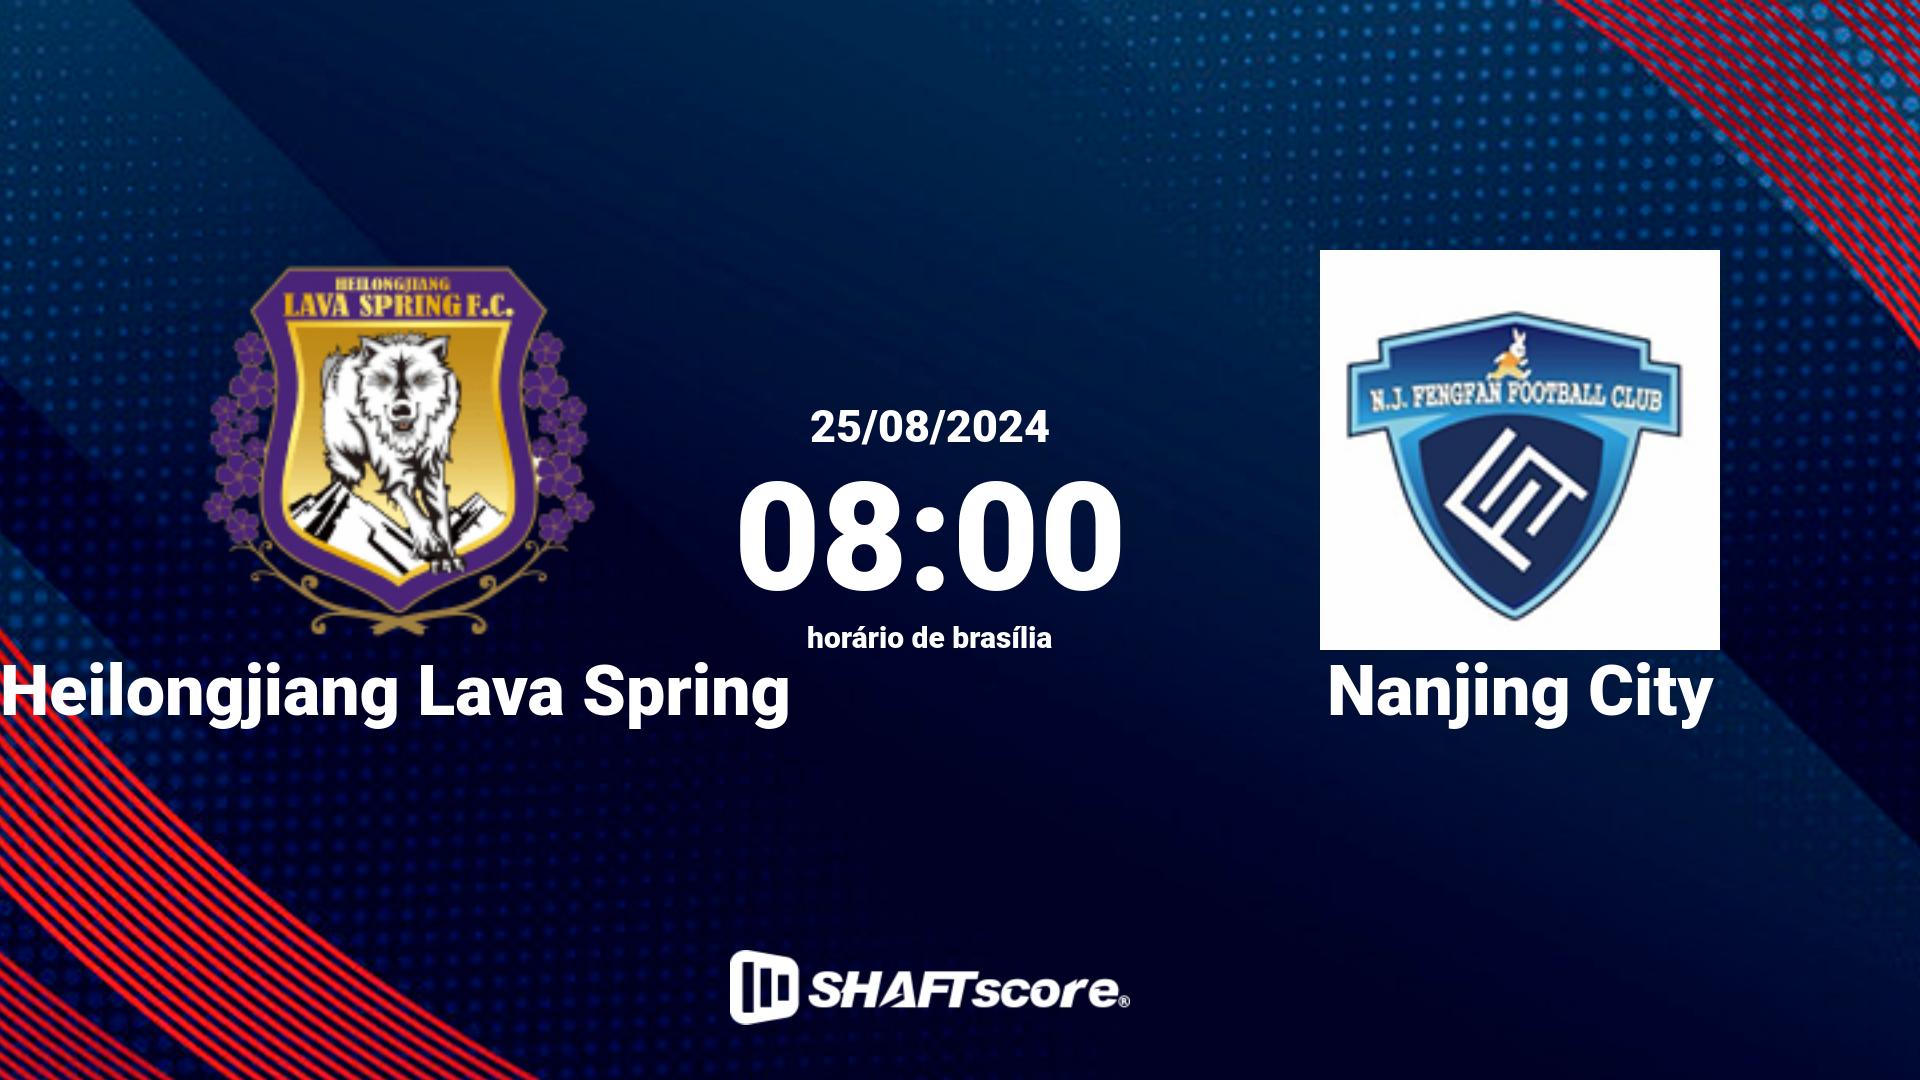 Estatísticas do jogo Heilongjiang Lava Spring vs Nanjing City 25.08 08:00